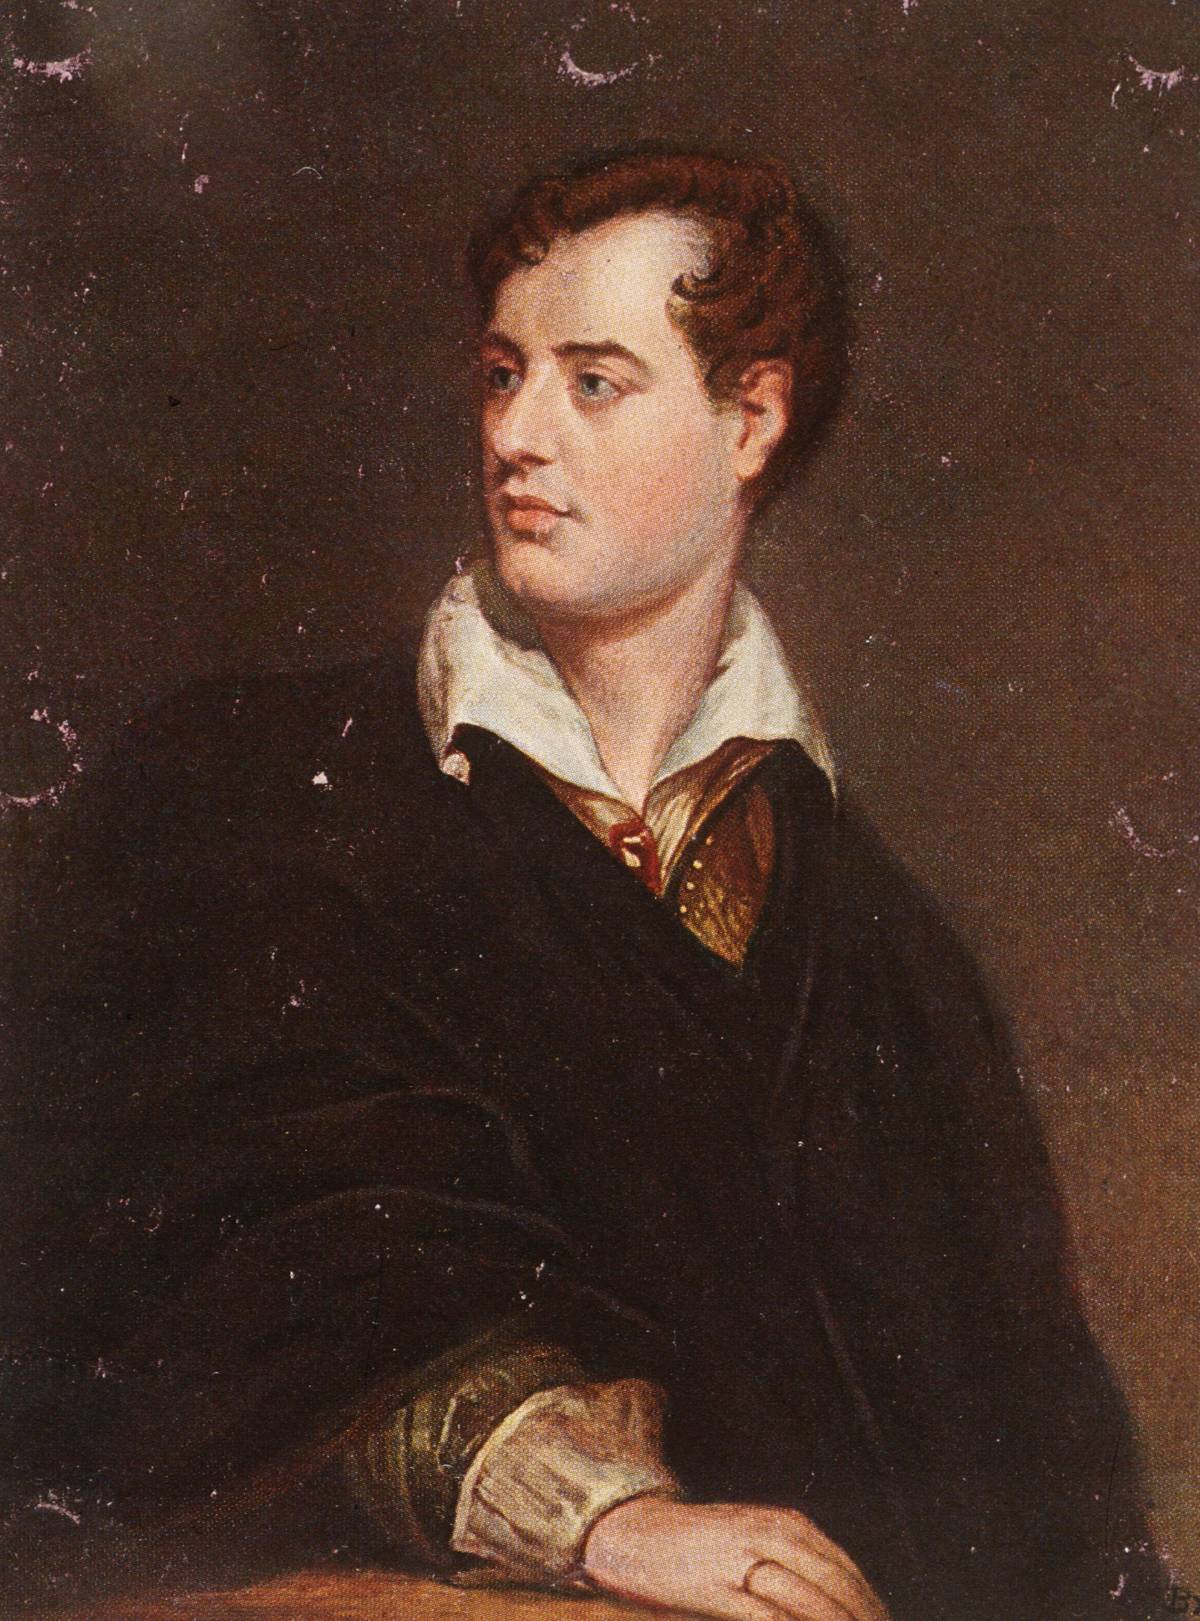 Champagne, ribellione e libertà. La vita quotidiana di Lord Byron